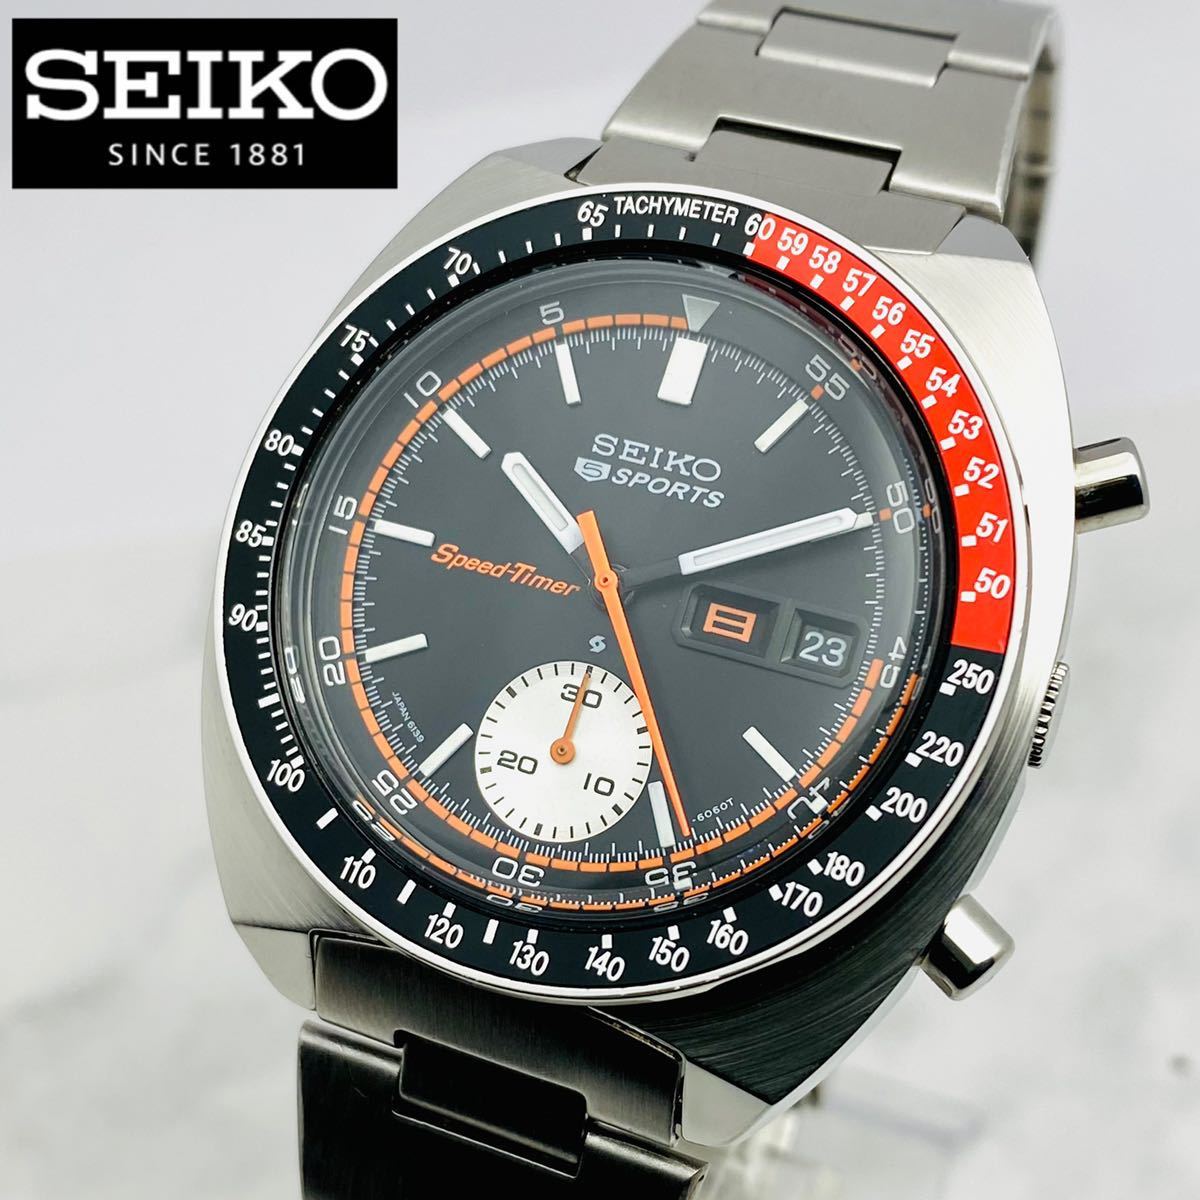 極美品 希少 SEIKO セイコー 5スポーツ Speed-Timer コーク 6139-6032 クロノグラフ  自動巻/スピードタイマー/ヴィンテージ/メンズ腕時計